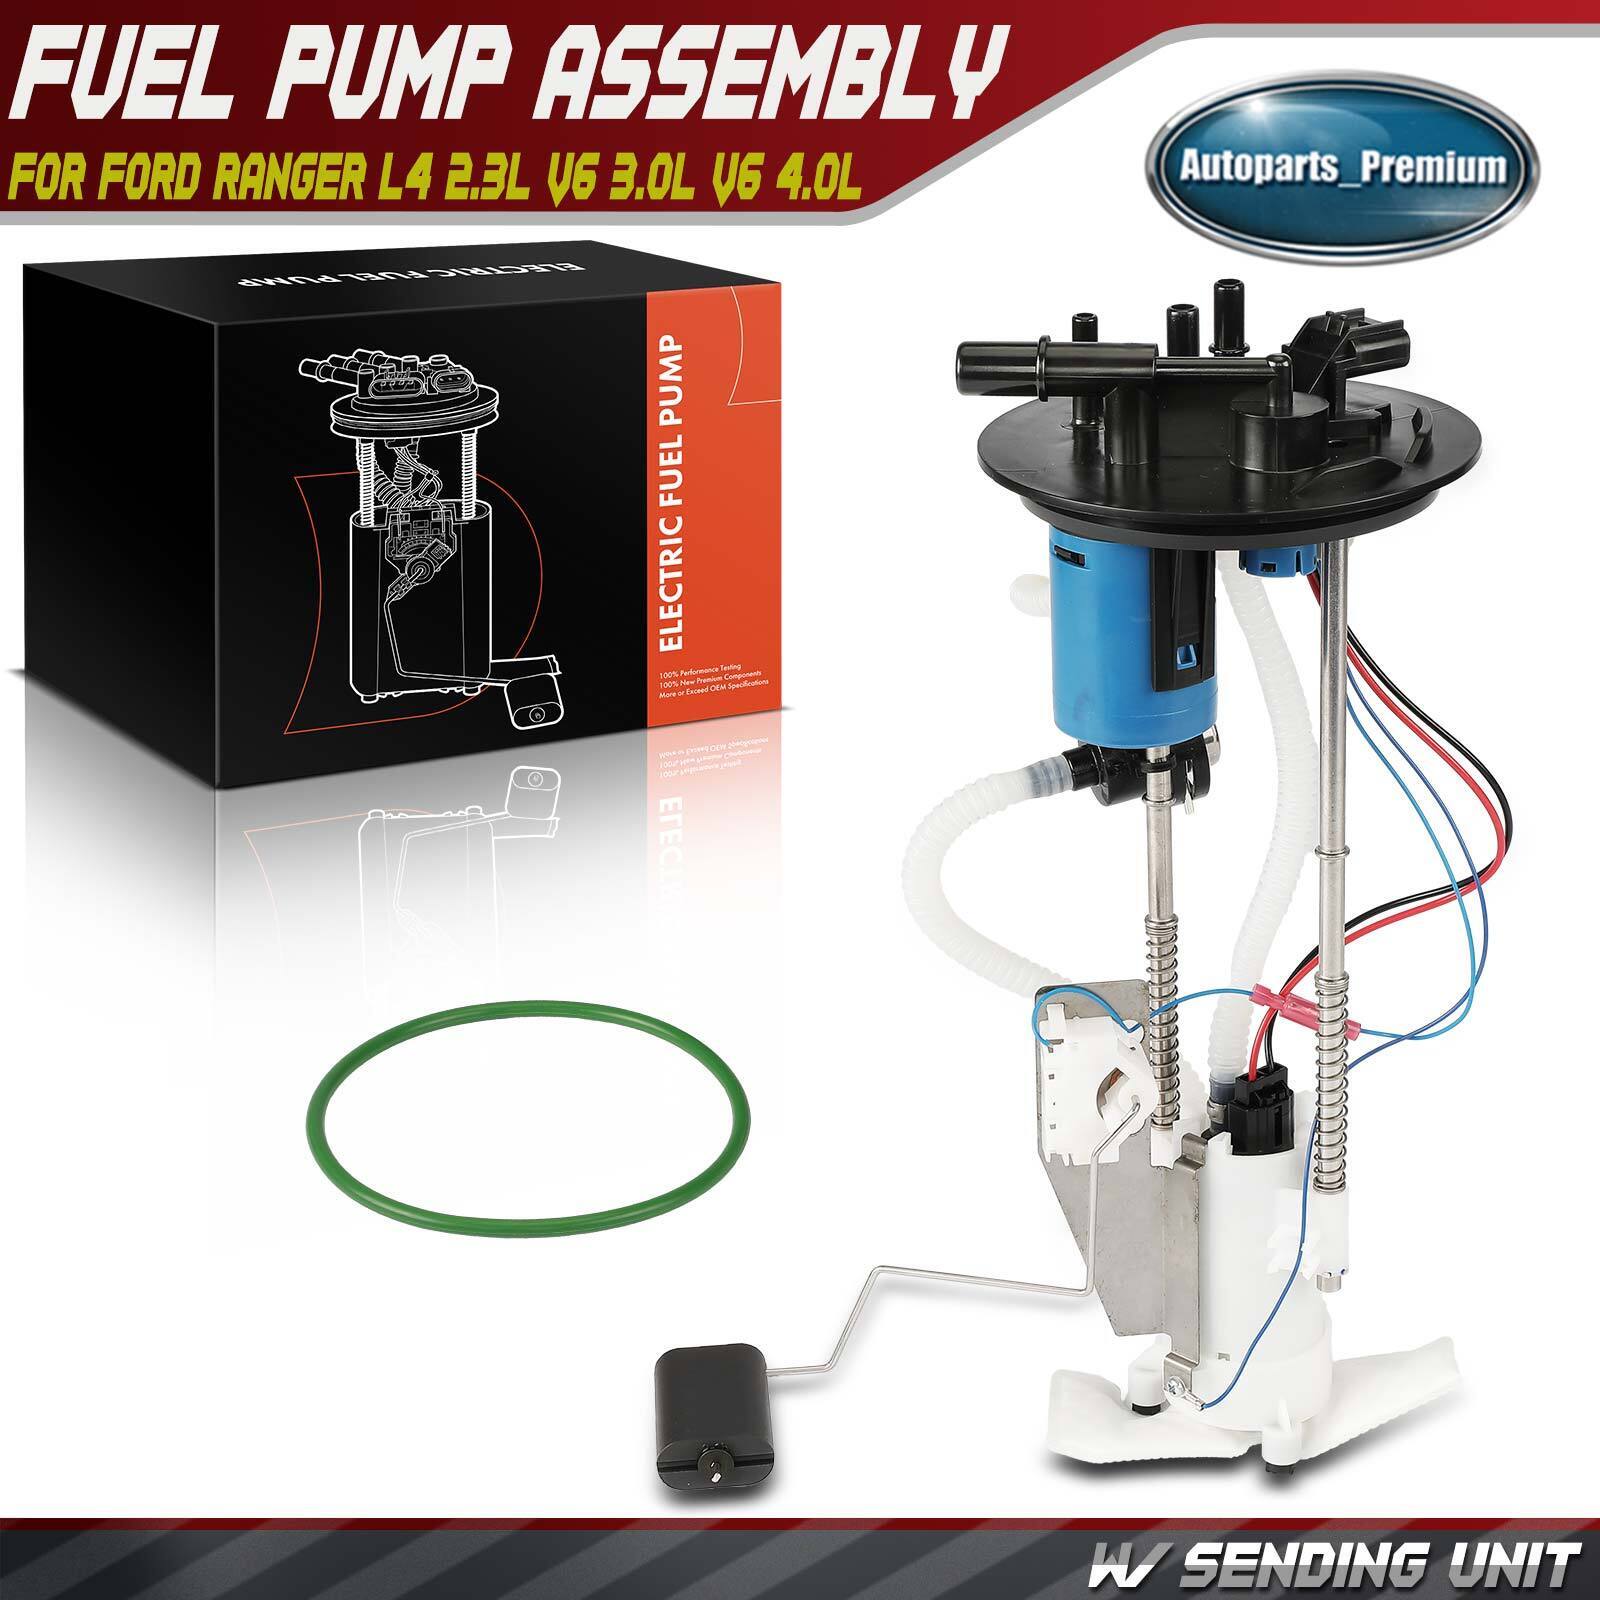 Fuel Pump Module Assembly w/ Sending Unit for Ford Ranger 2.3L 3.0L 4.0L 117.6\